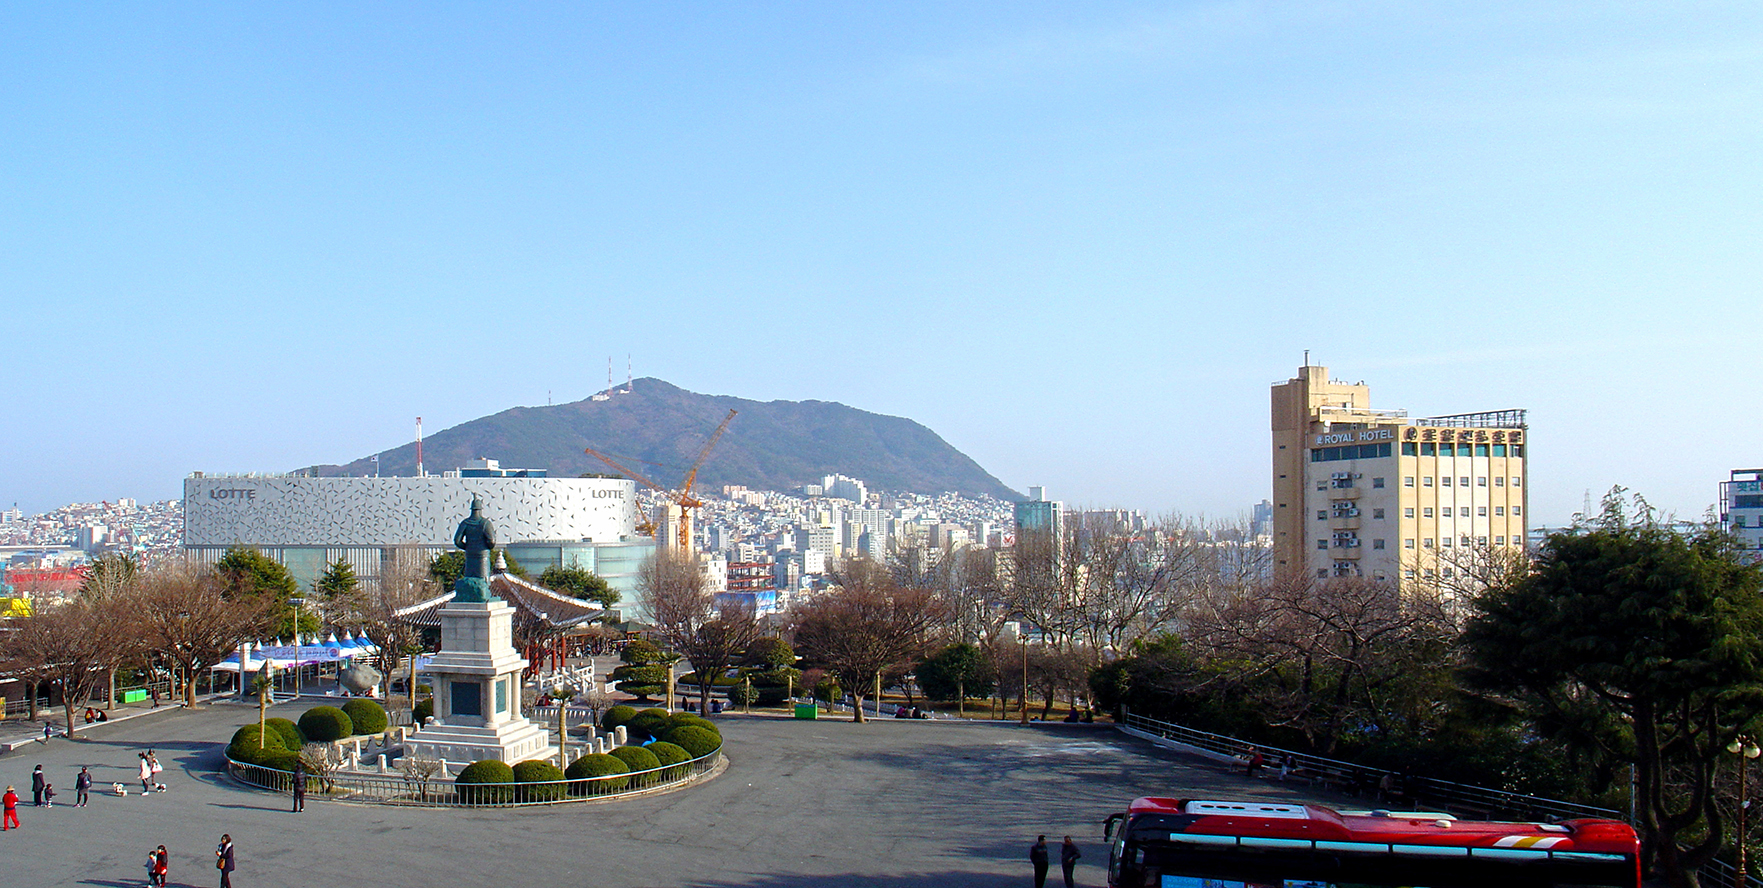 Busan (부산) - Yongdusan Park